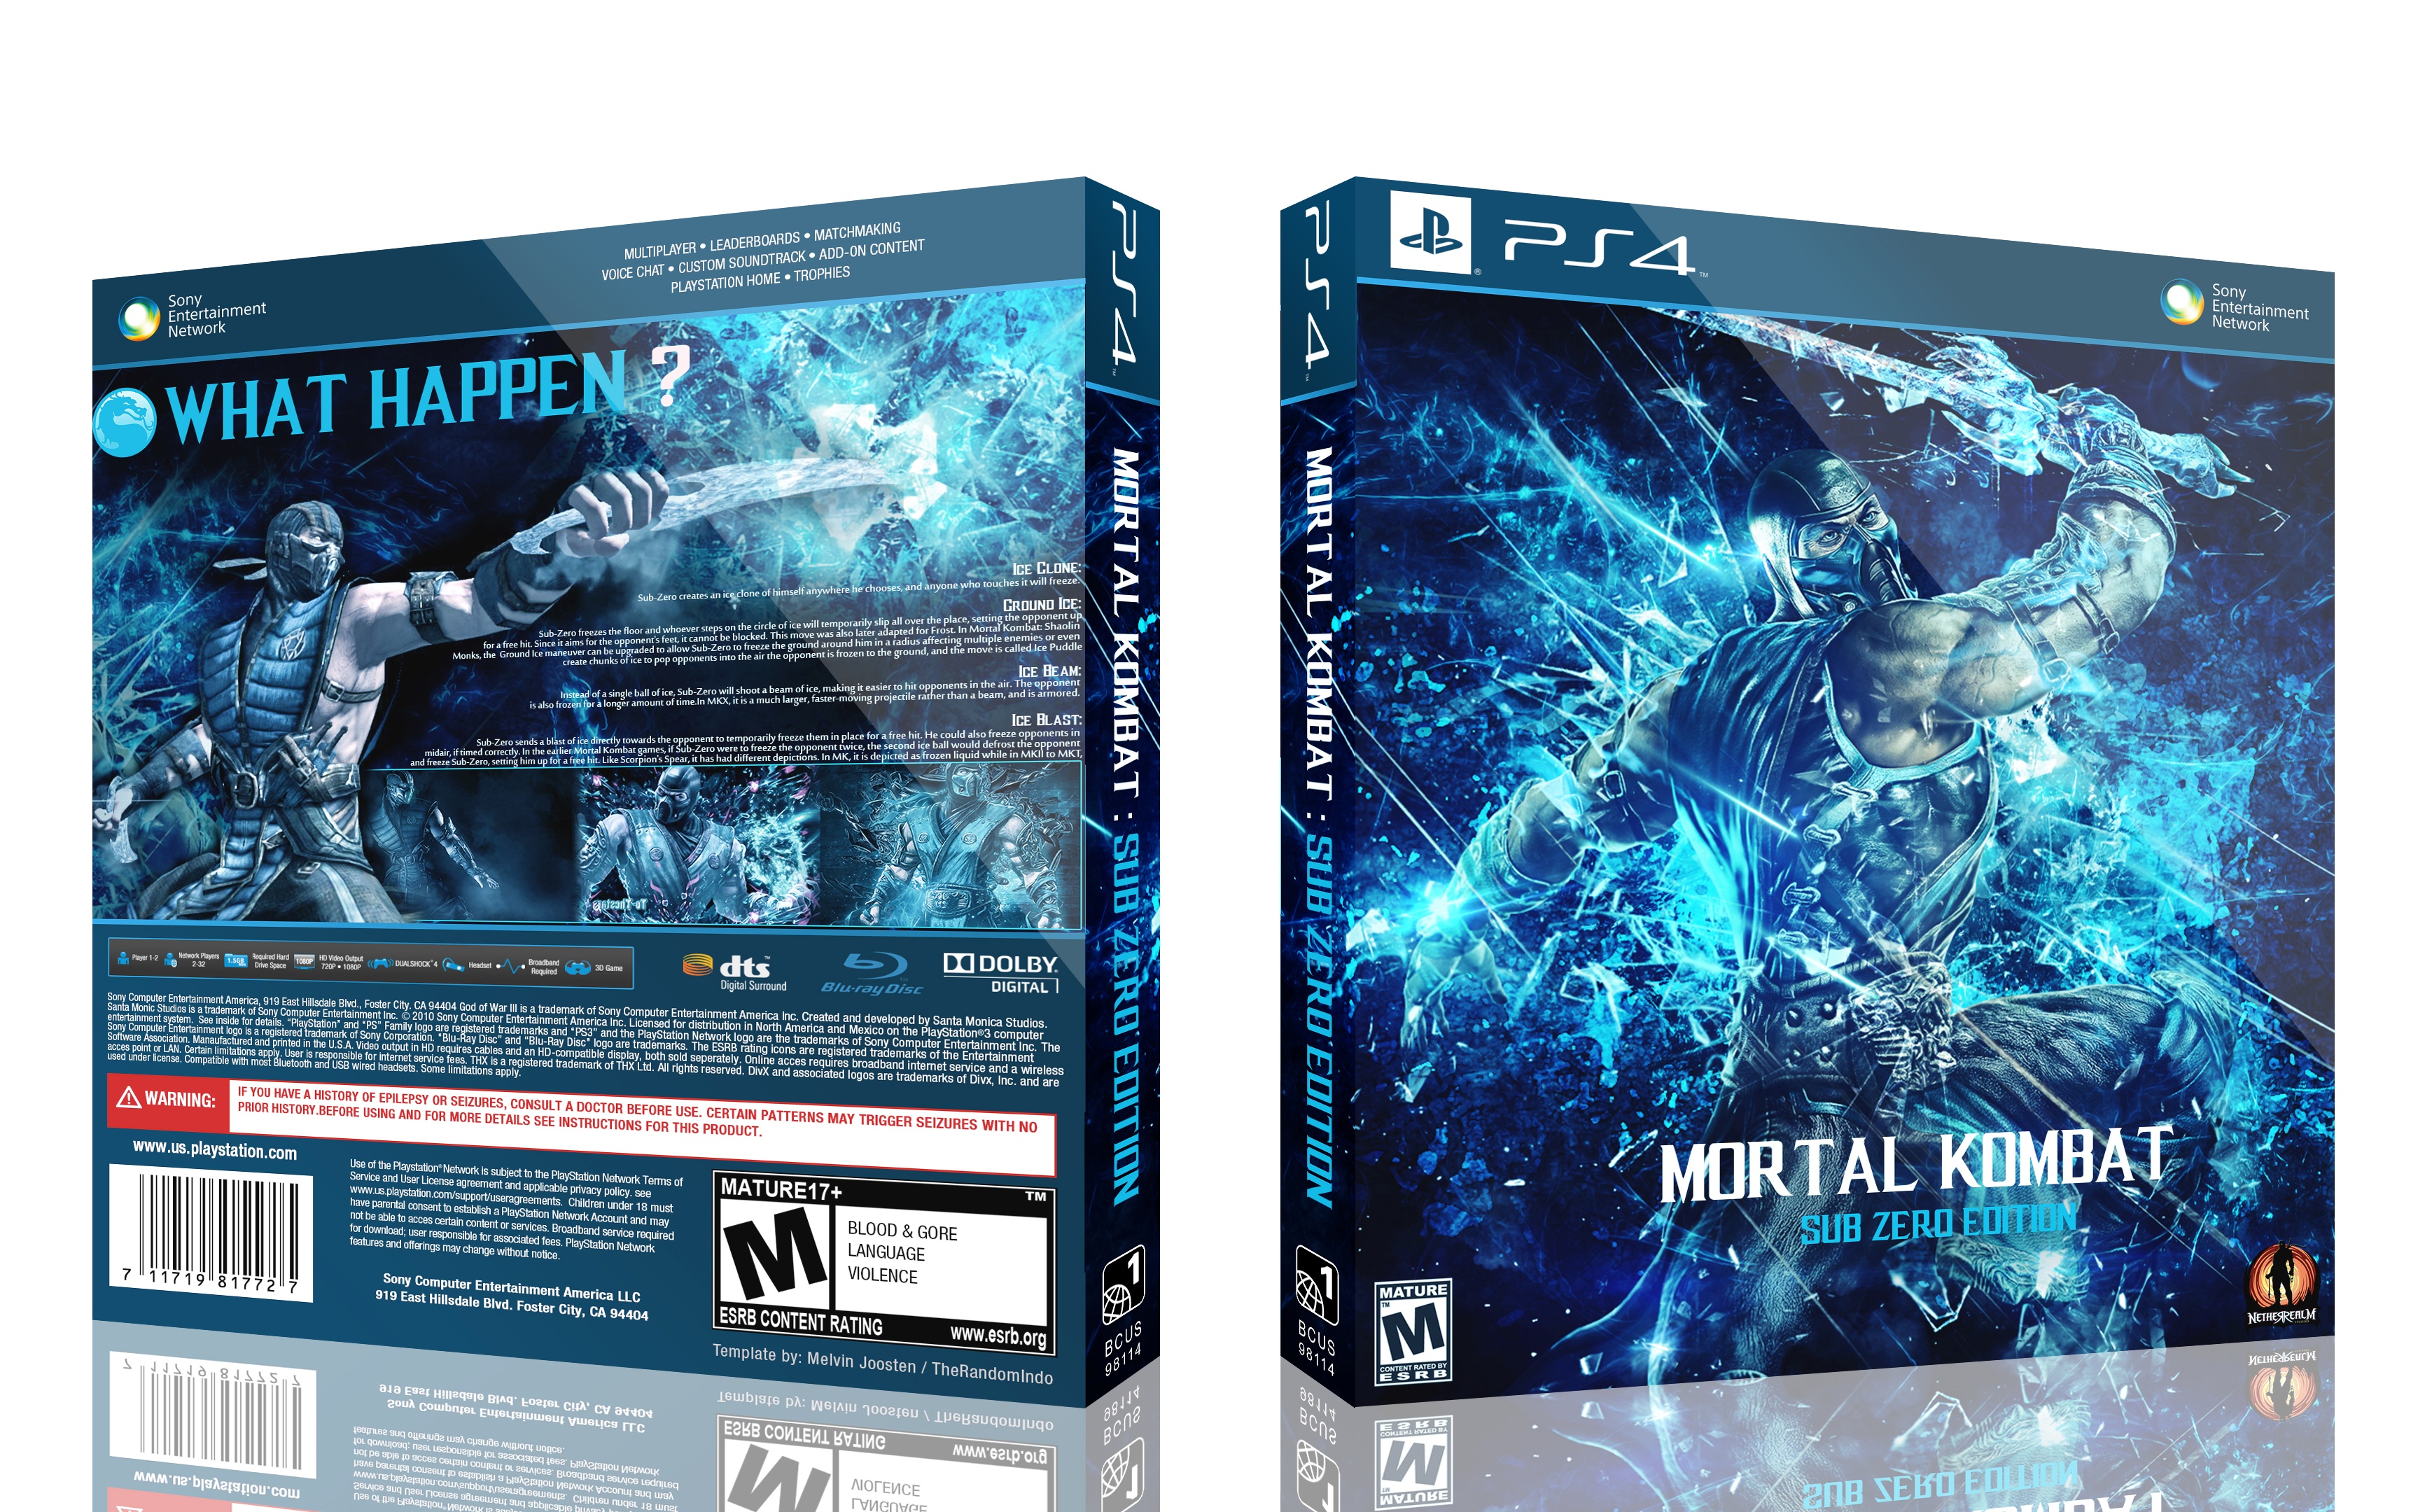 Mortal Kombat : Sub Zero Edition box cover